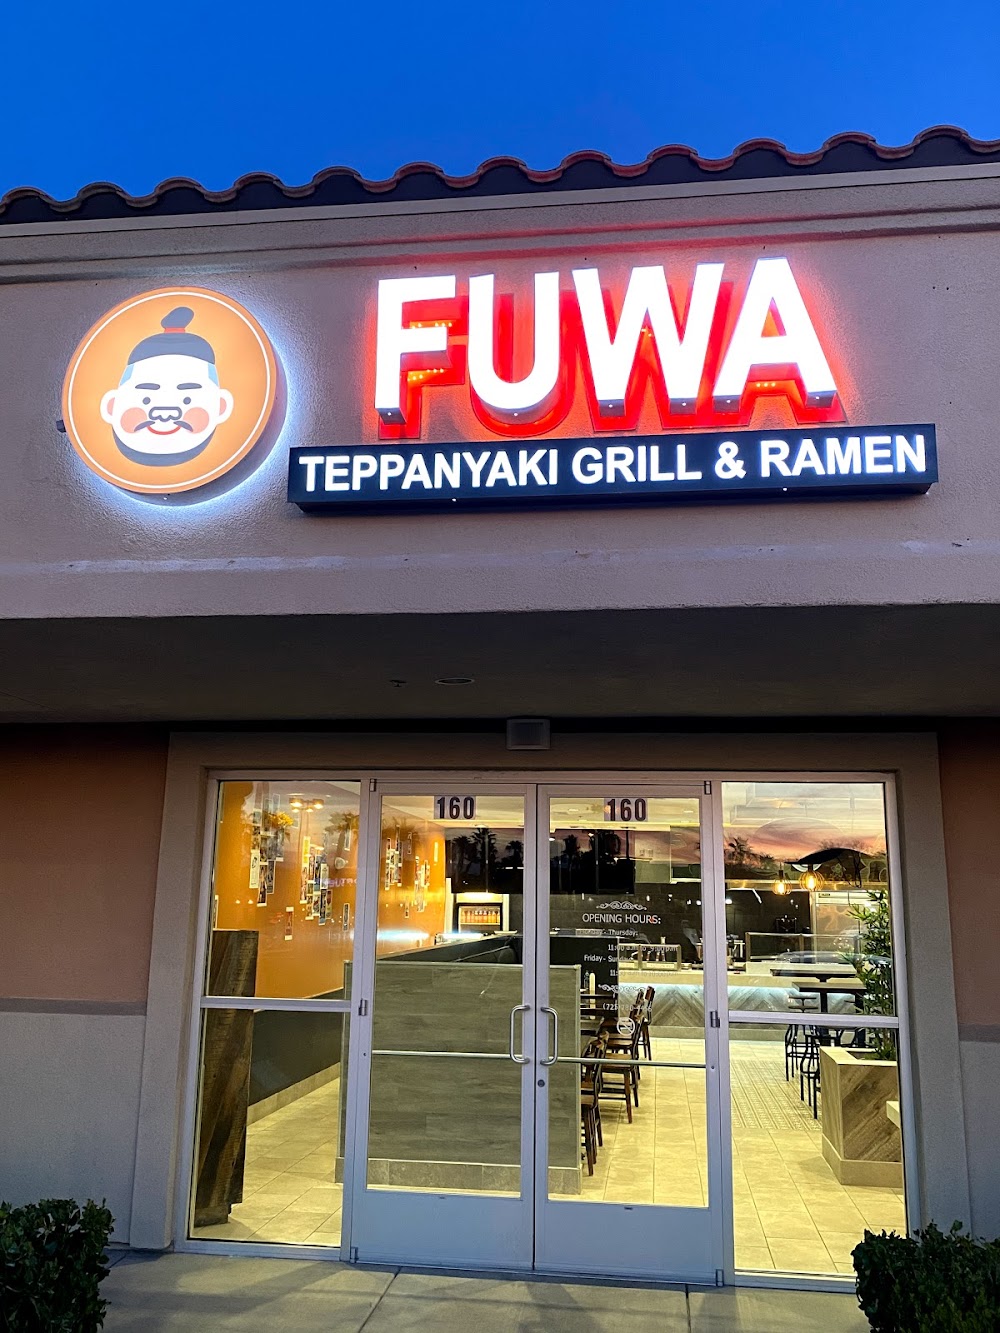 FUWA Teppanyaki Grill & Ramen